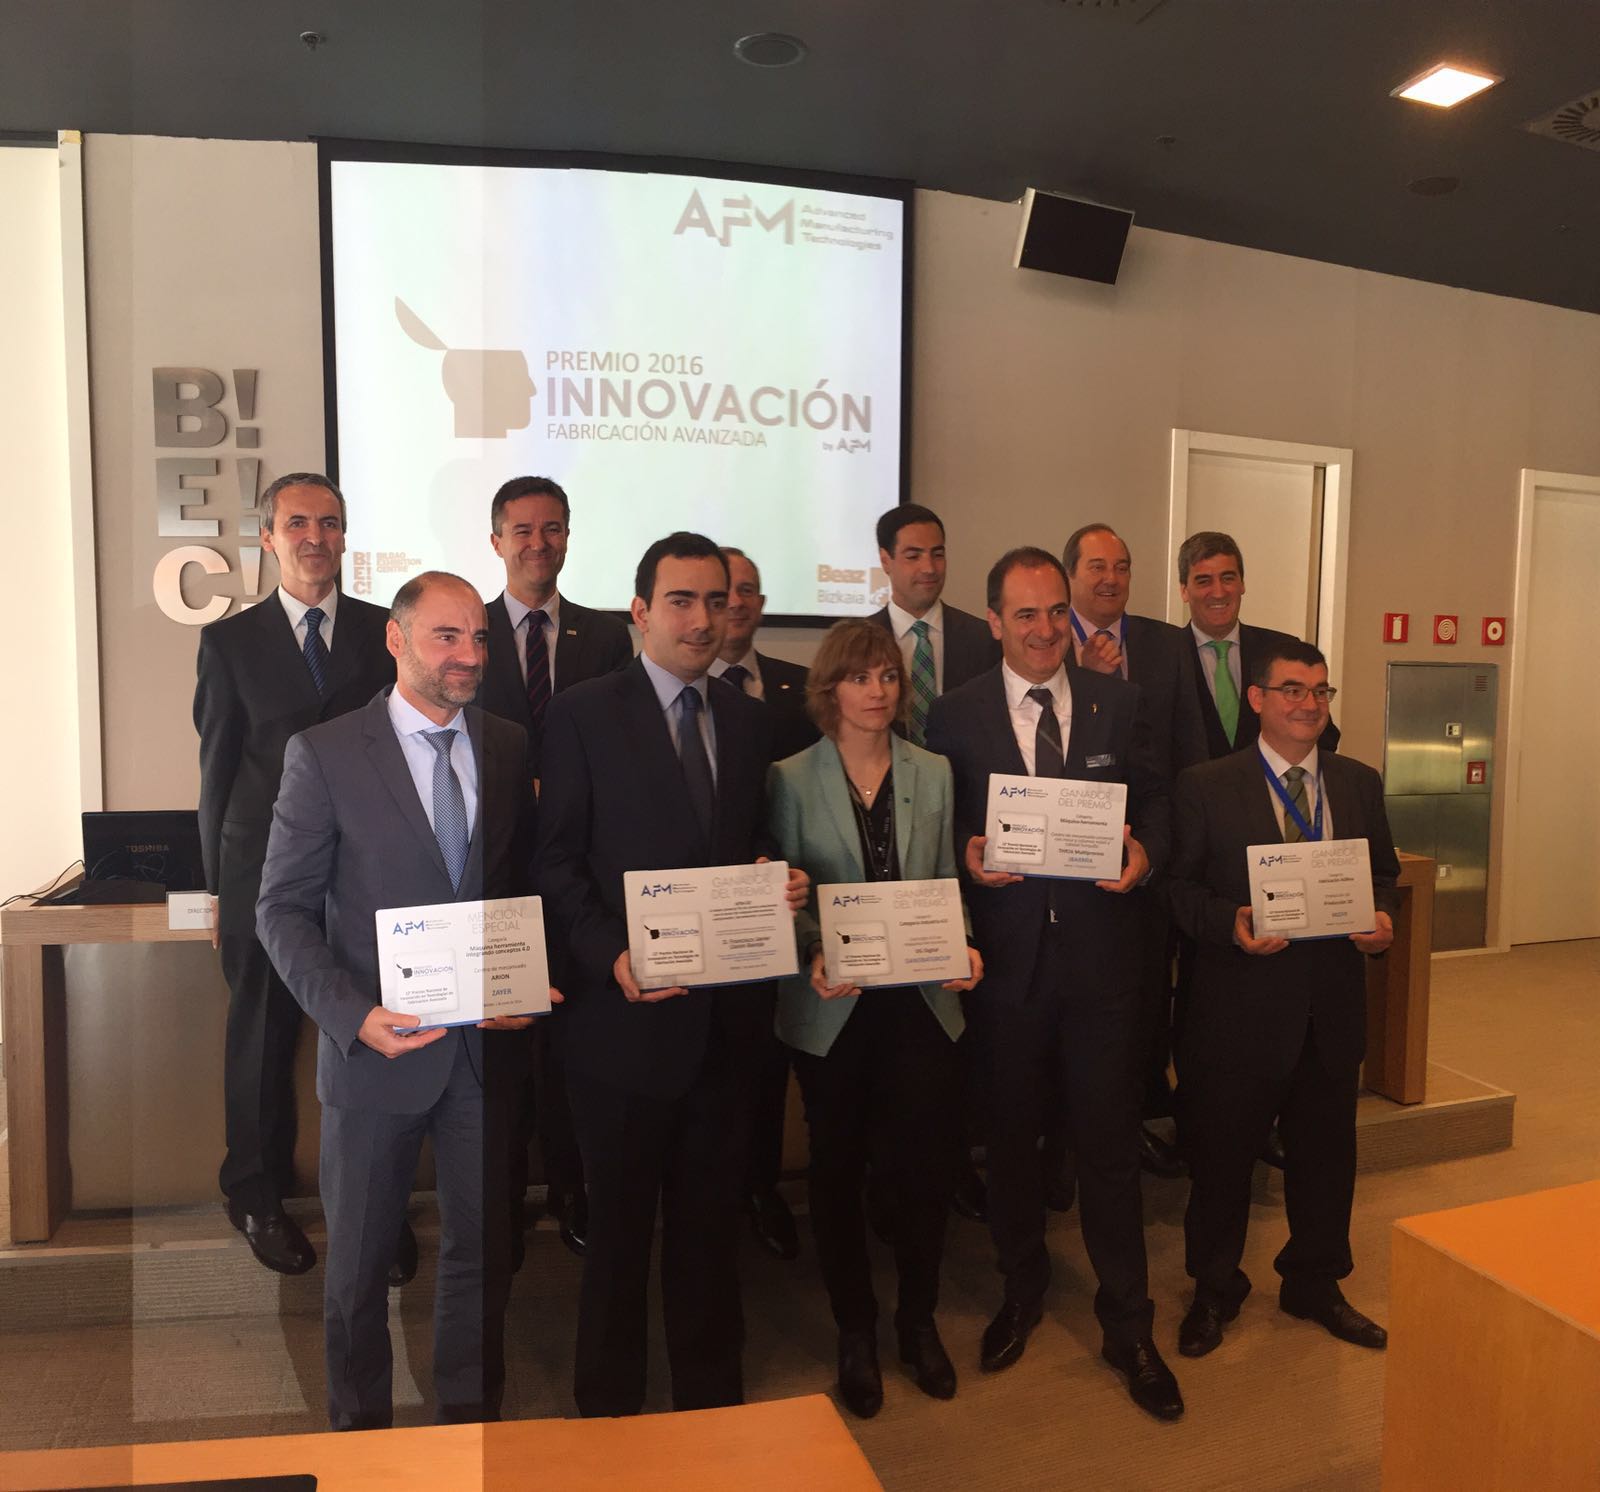 Ibarmia, Danobatgroup y Mizar, ganadores del premio a la innovación en fabricación avanzada